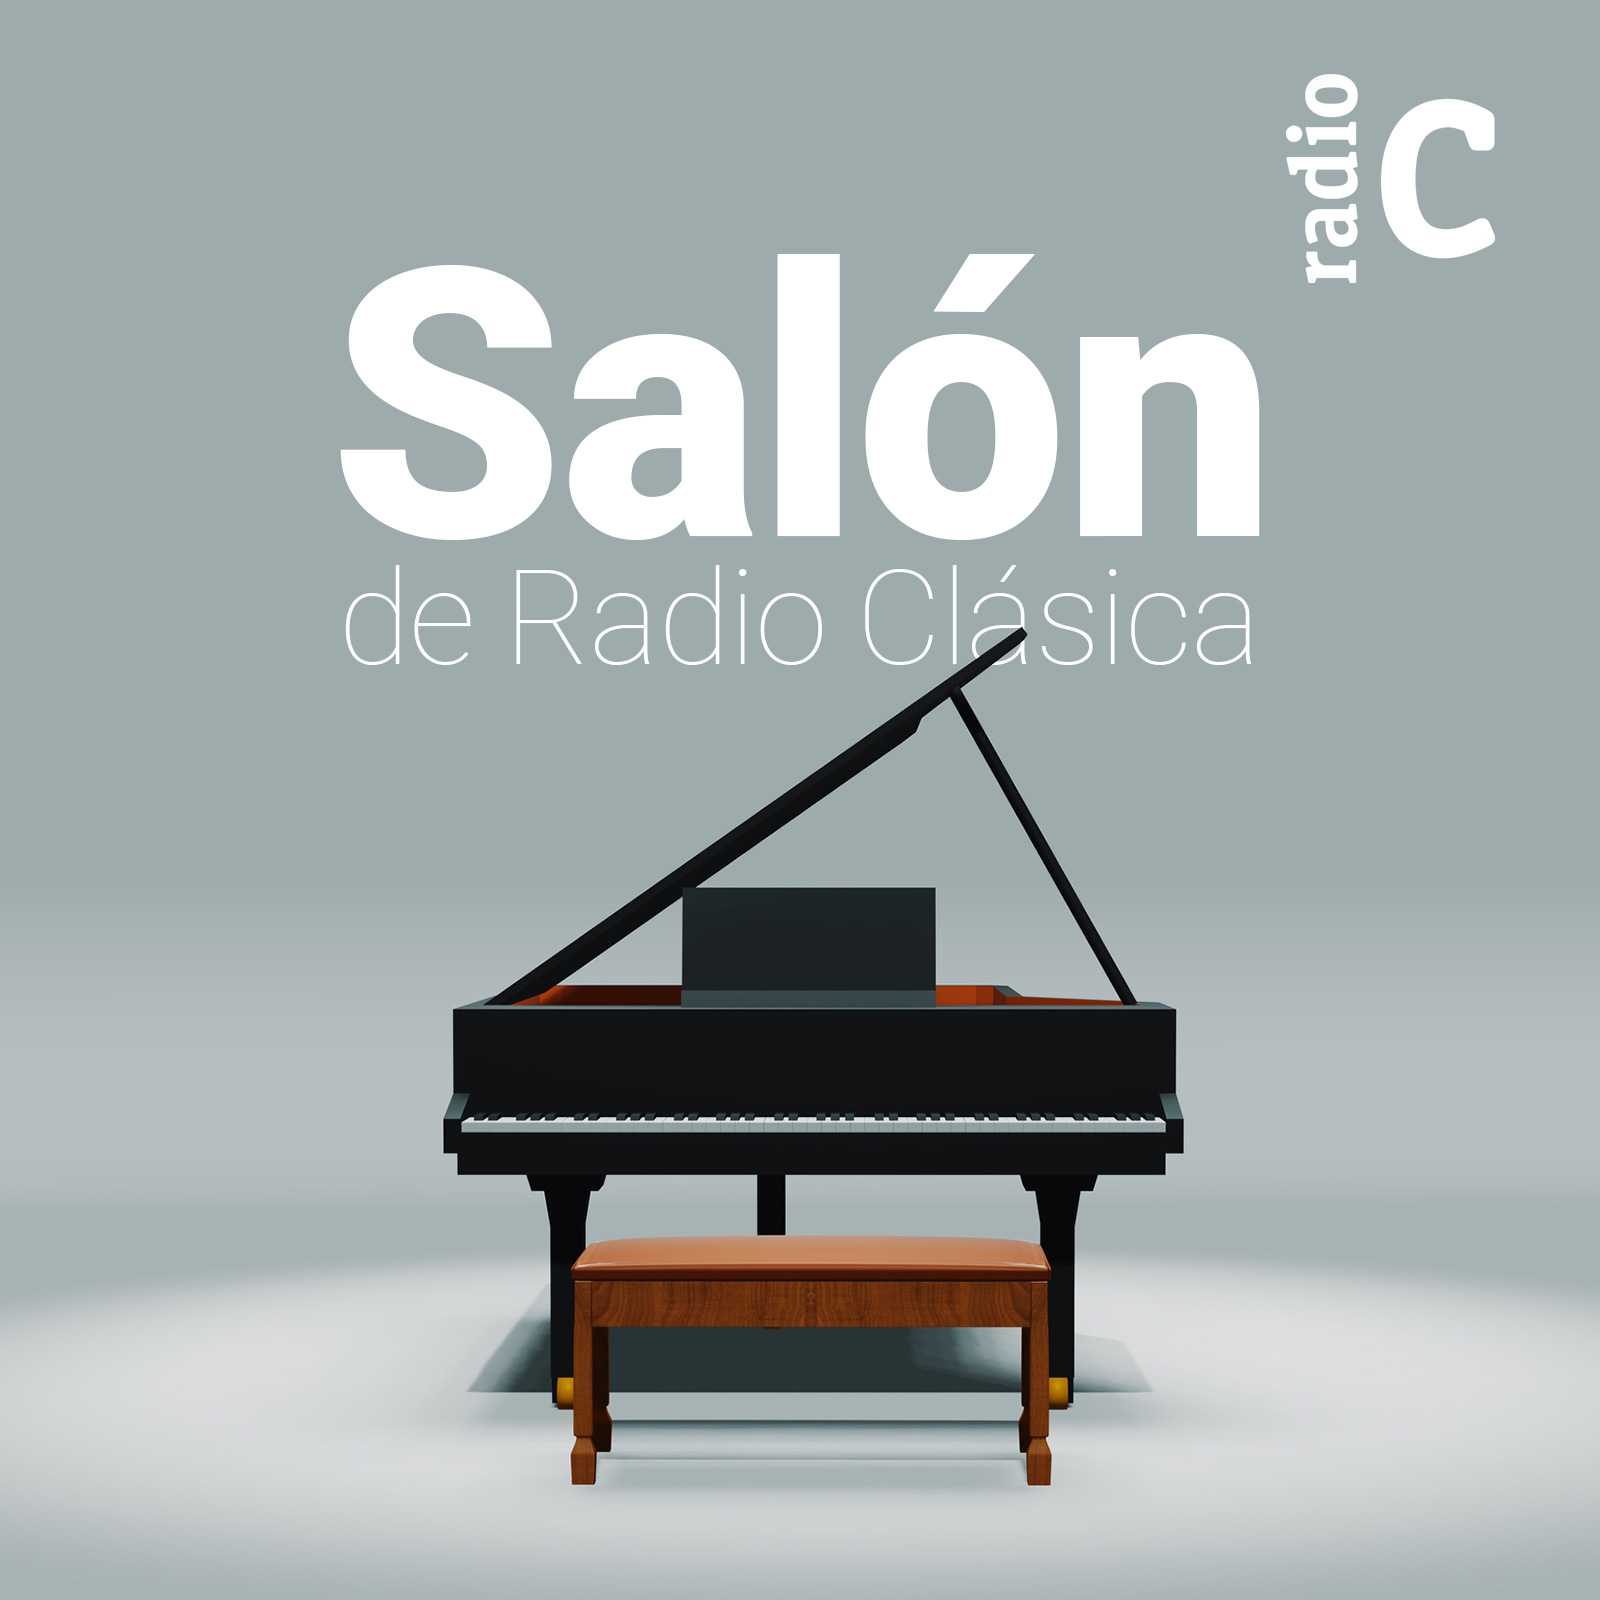 El salón de Radio Clásica - 06/08/14